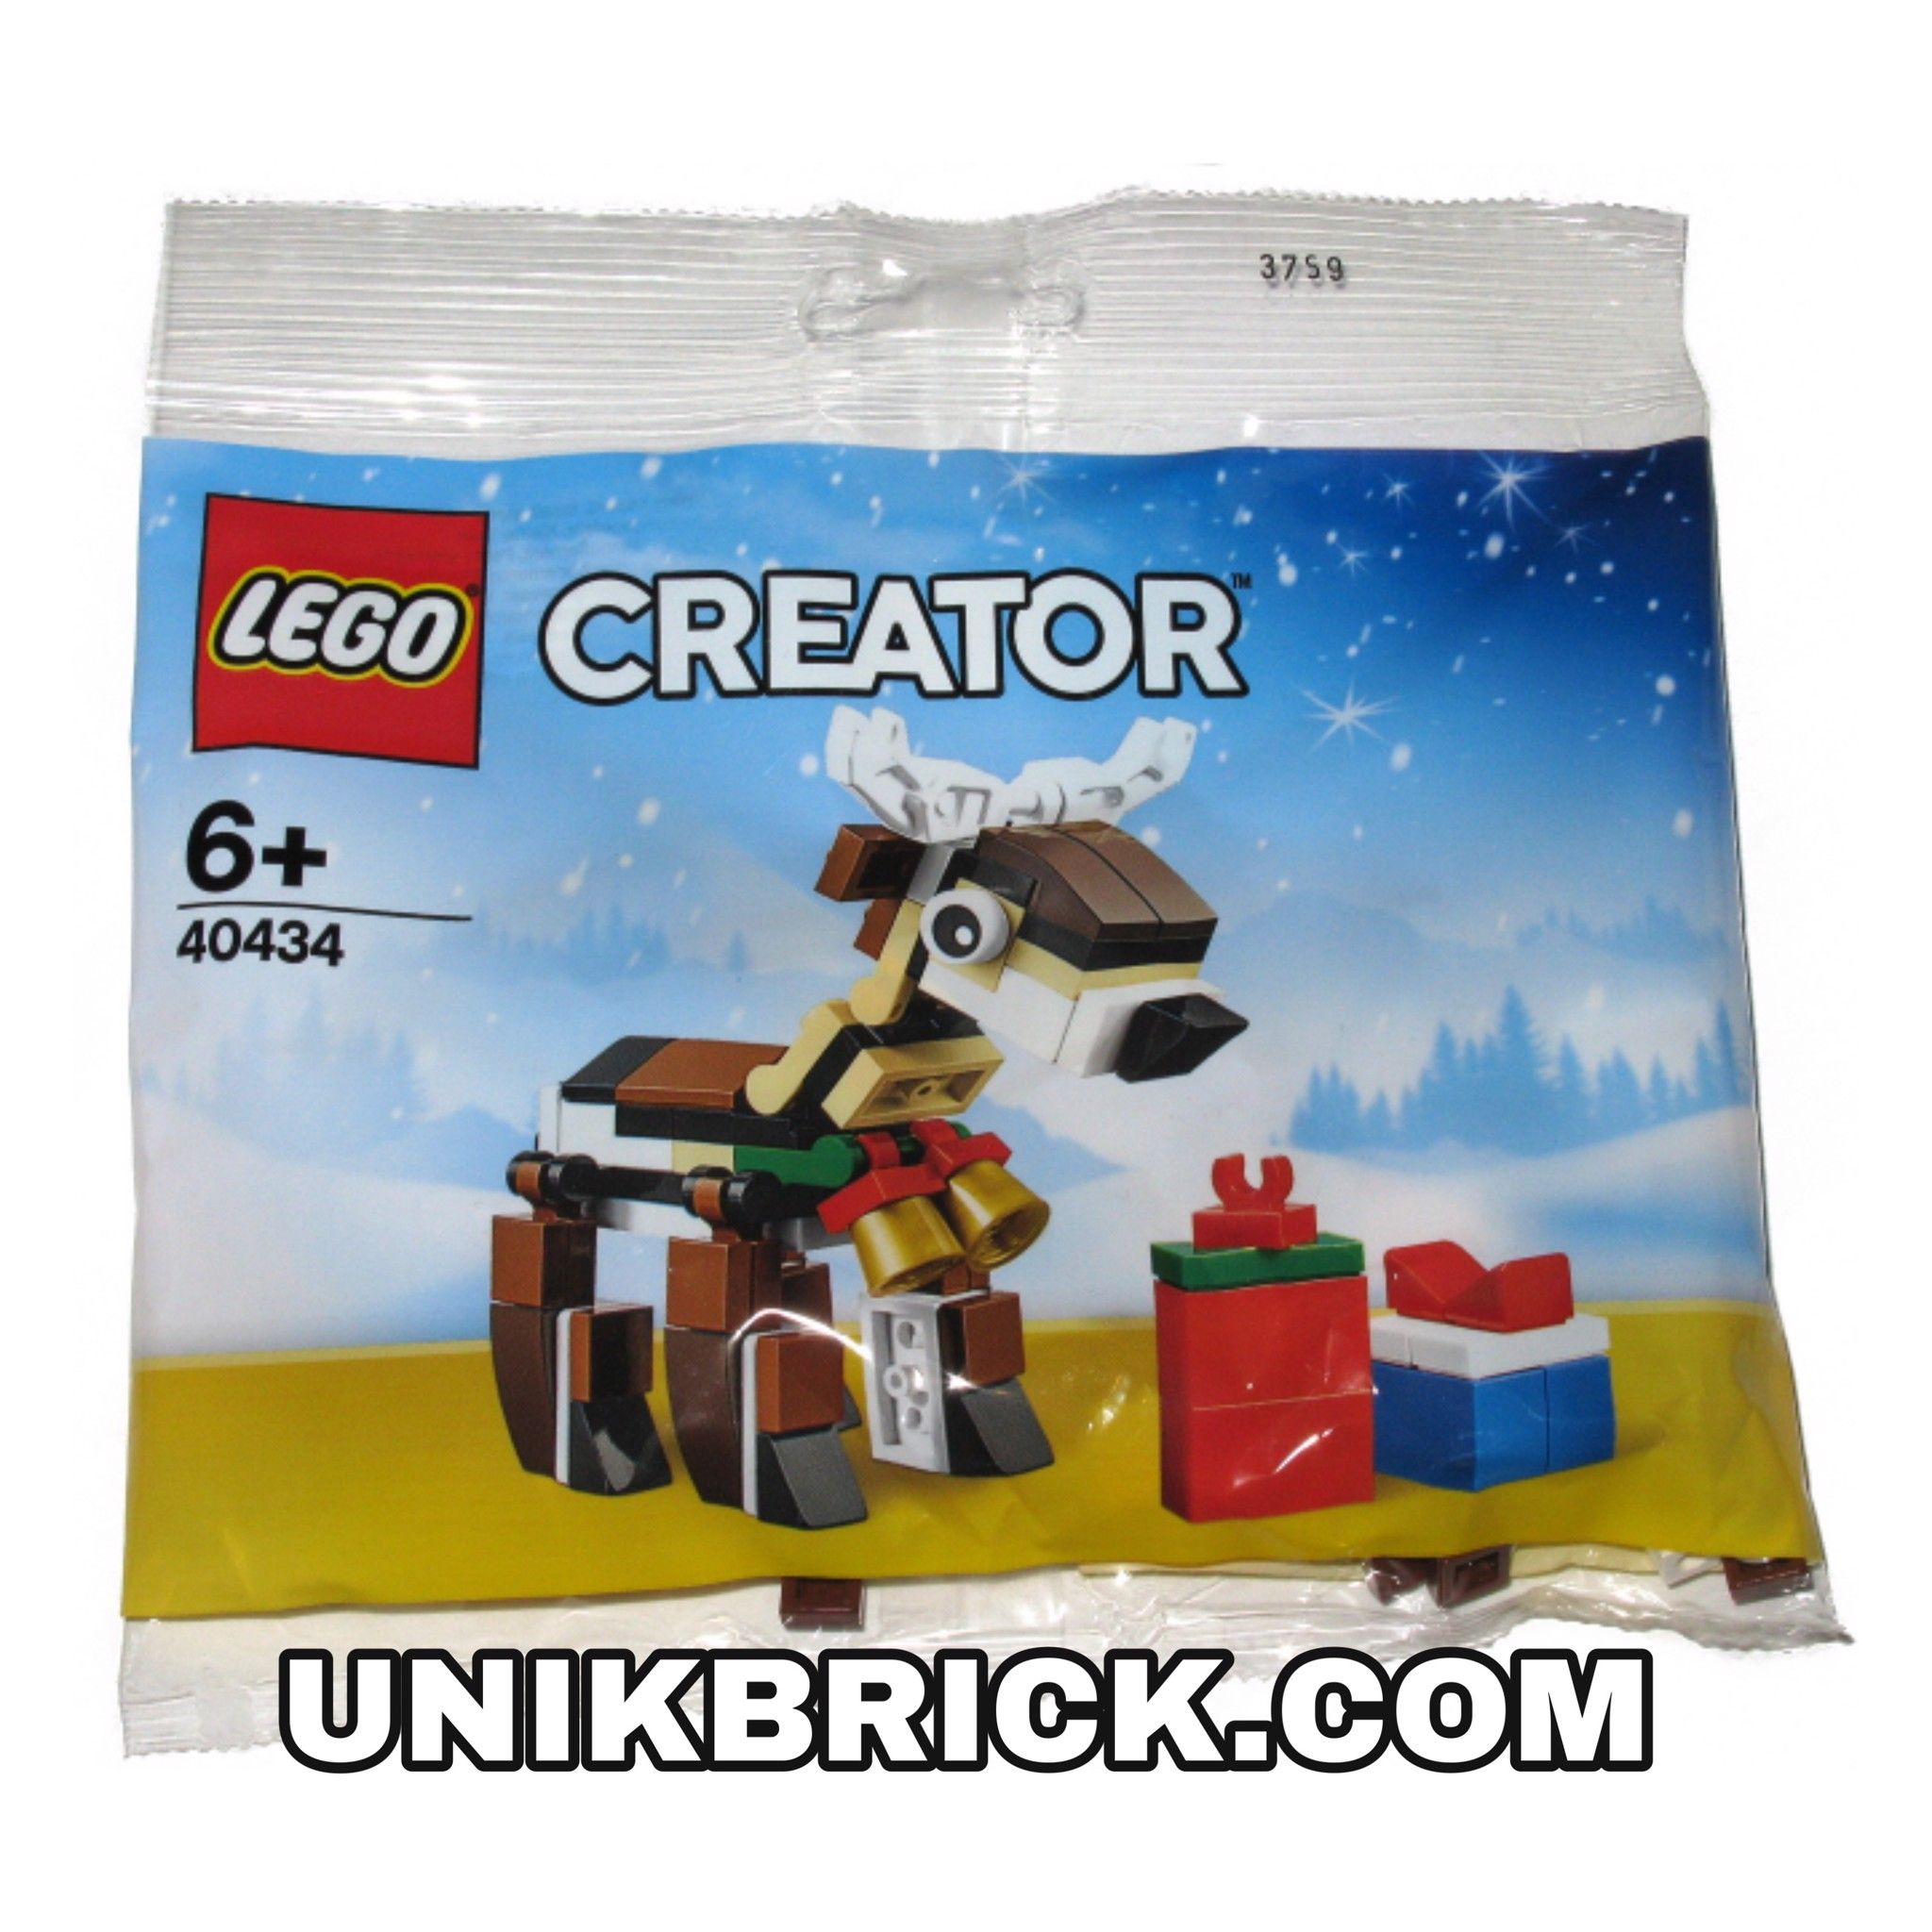 LEGO Creator 40434 Reindeer Polybag